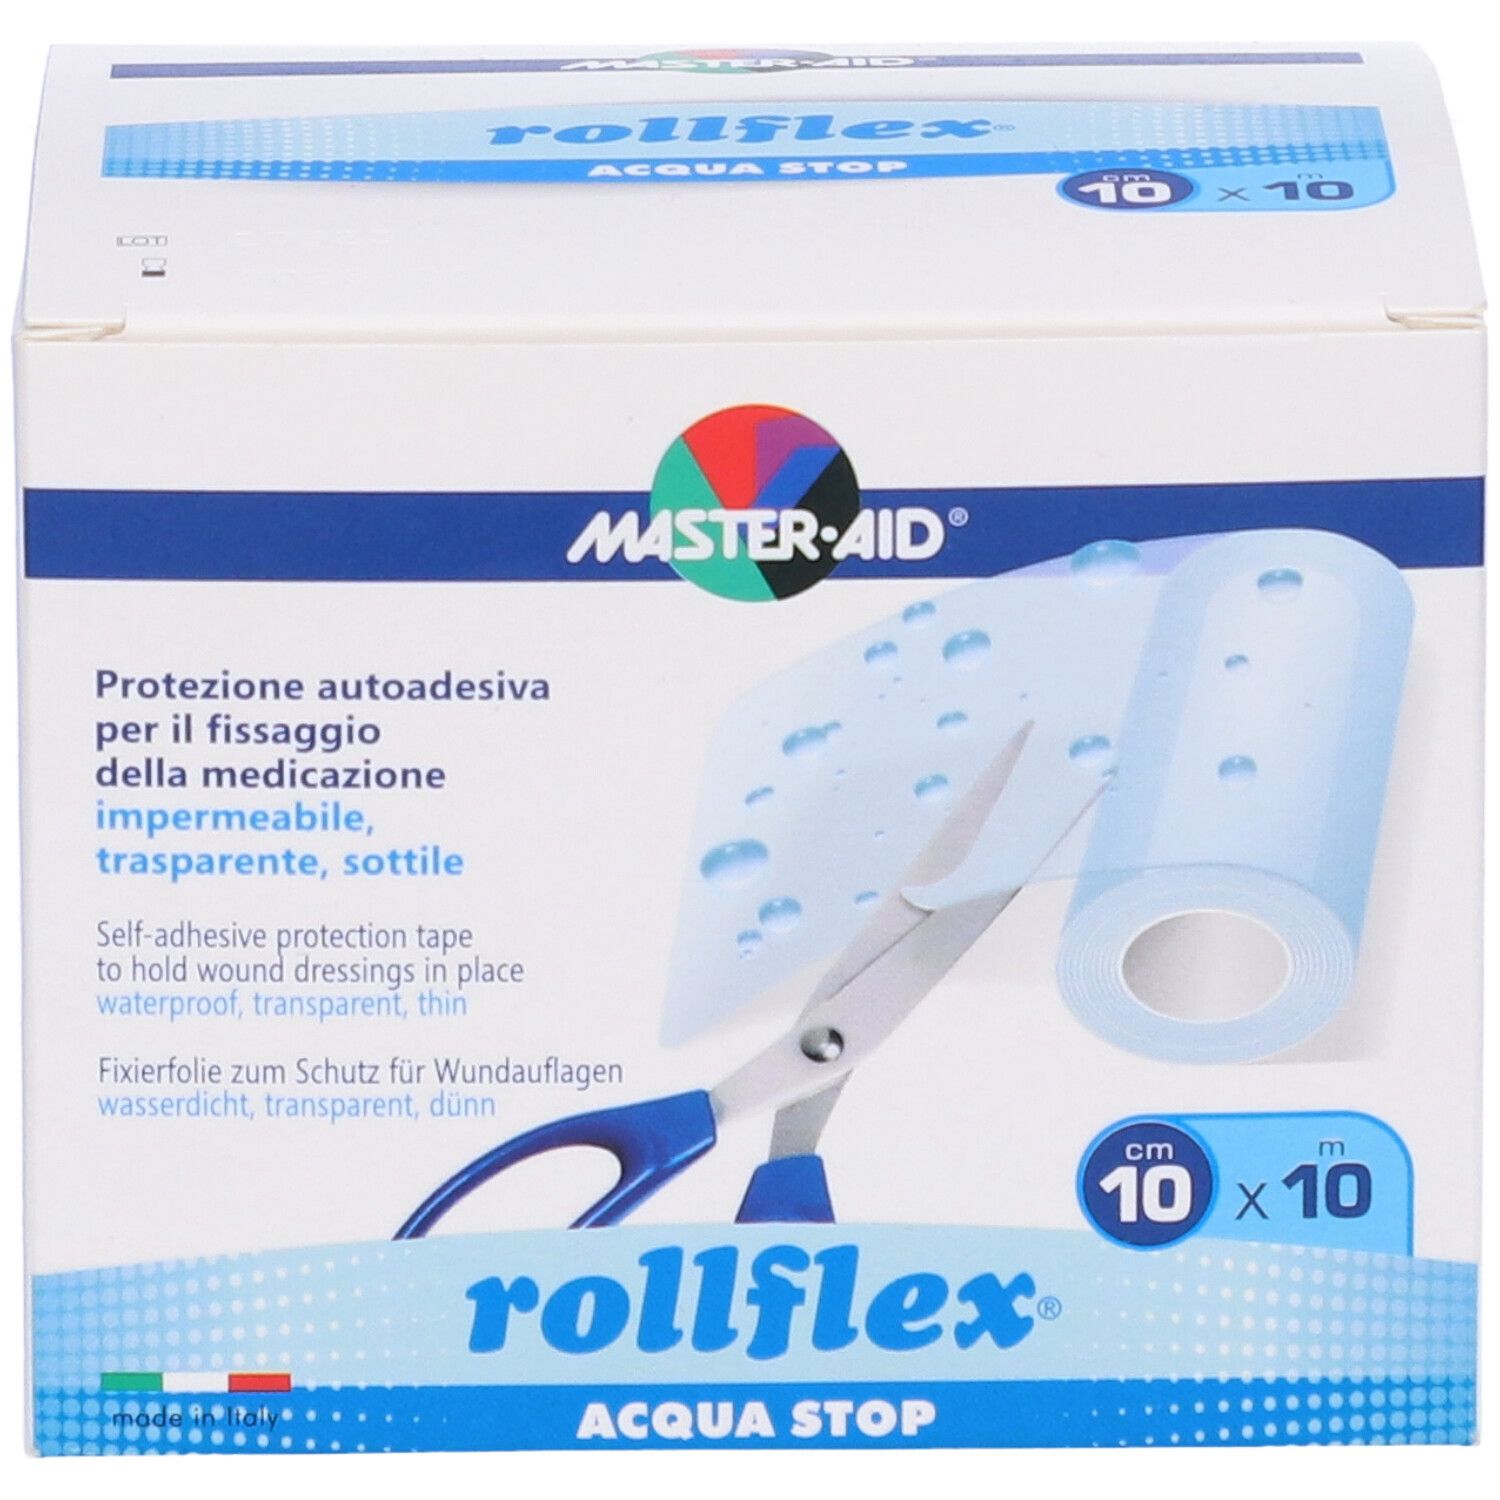 Master Aid Rollflex Acqua Stop 10x10 cm